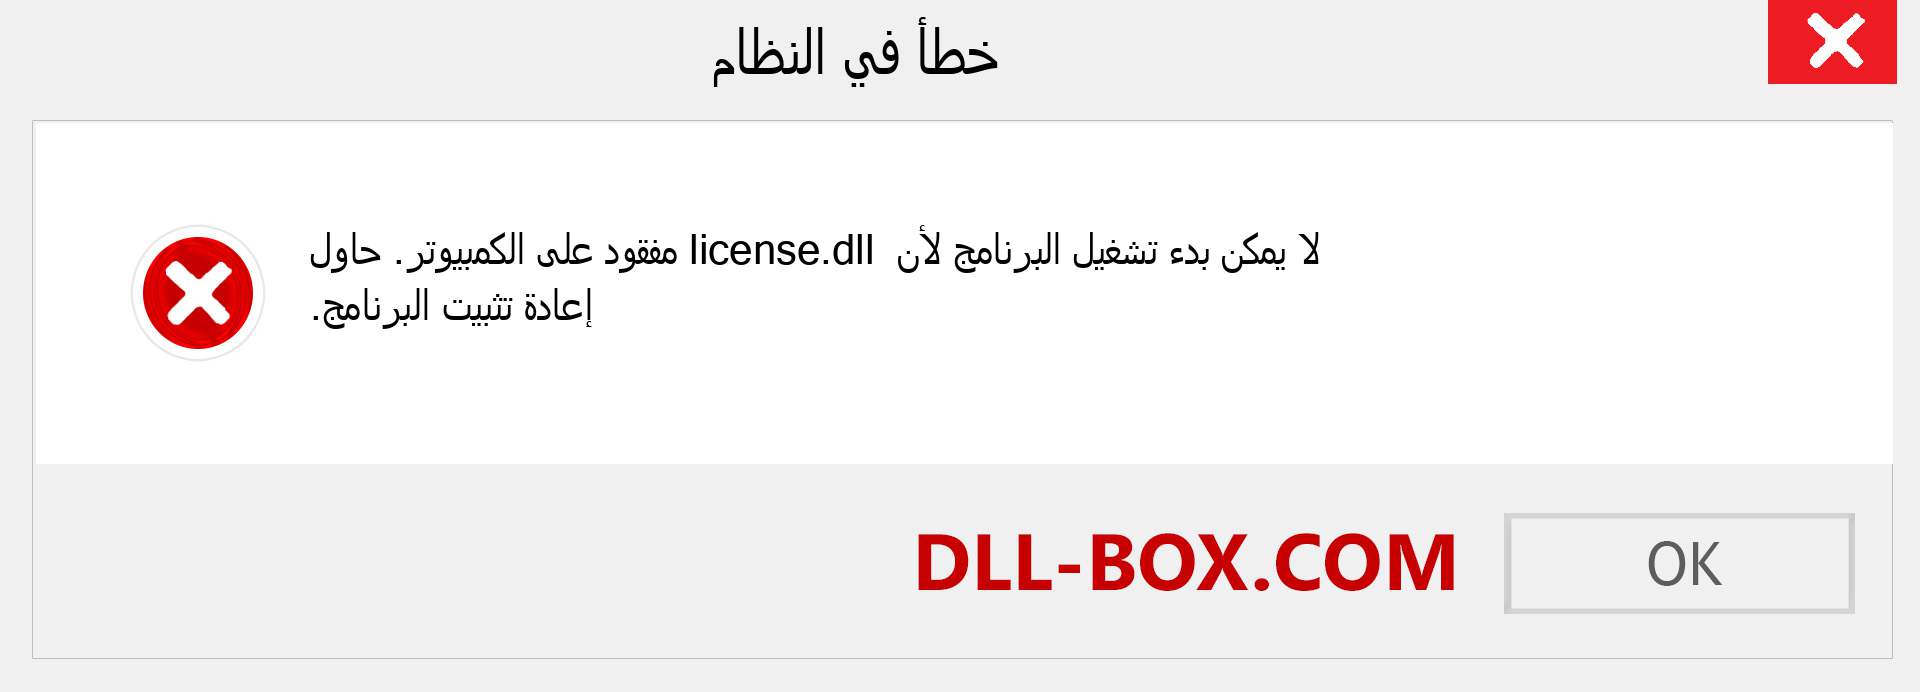 ملف license.dll مفقود ؟. التنزيل لنظام التشغيل Windows 7 و 8 و 10 - إصلاح خطأ license dll المفقود على Windows والصور والصور